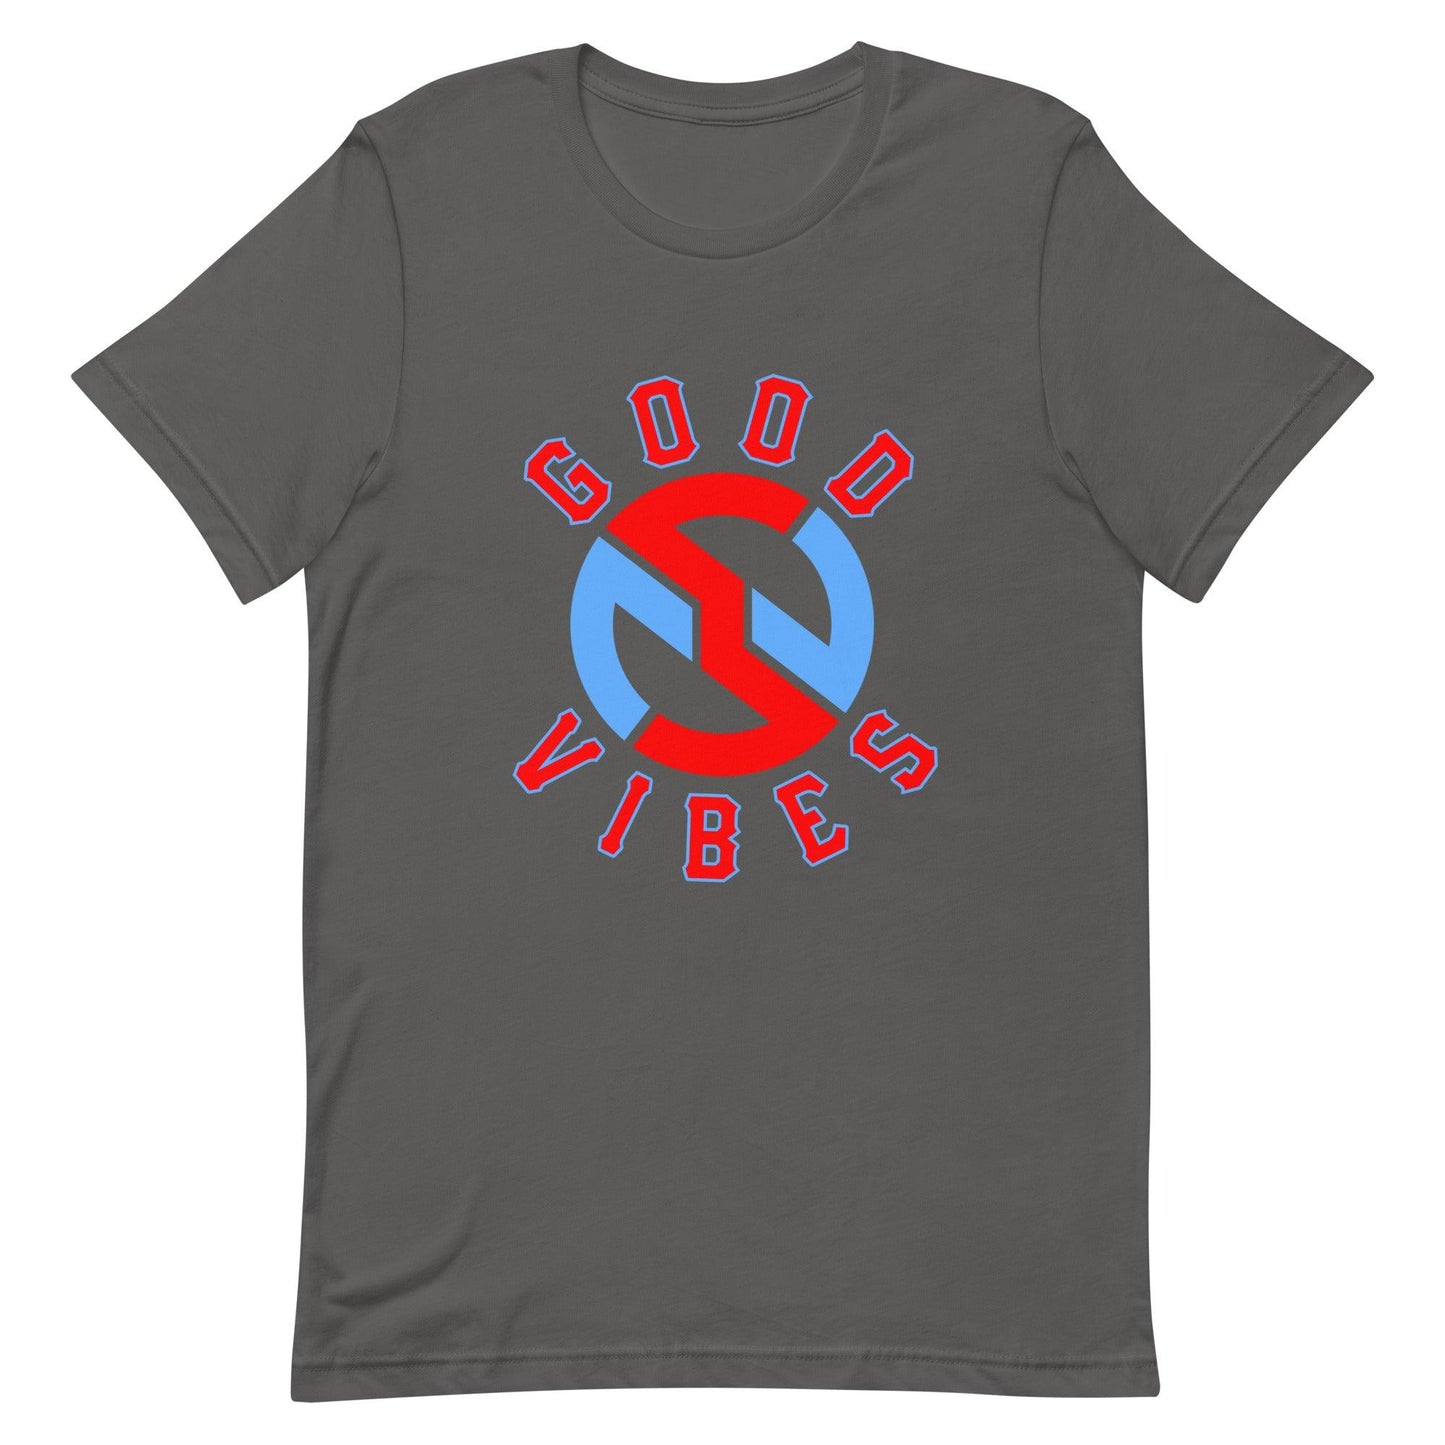 Nick Swiney “Heritage” t-shirt - Fan Arch